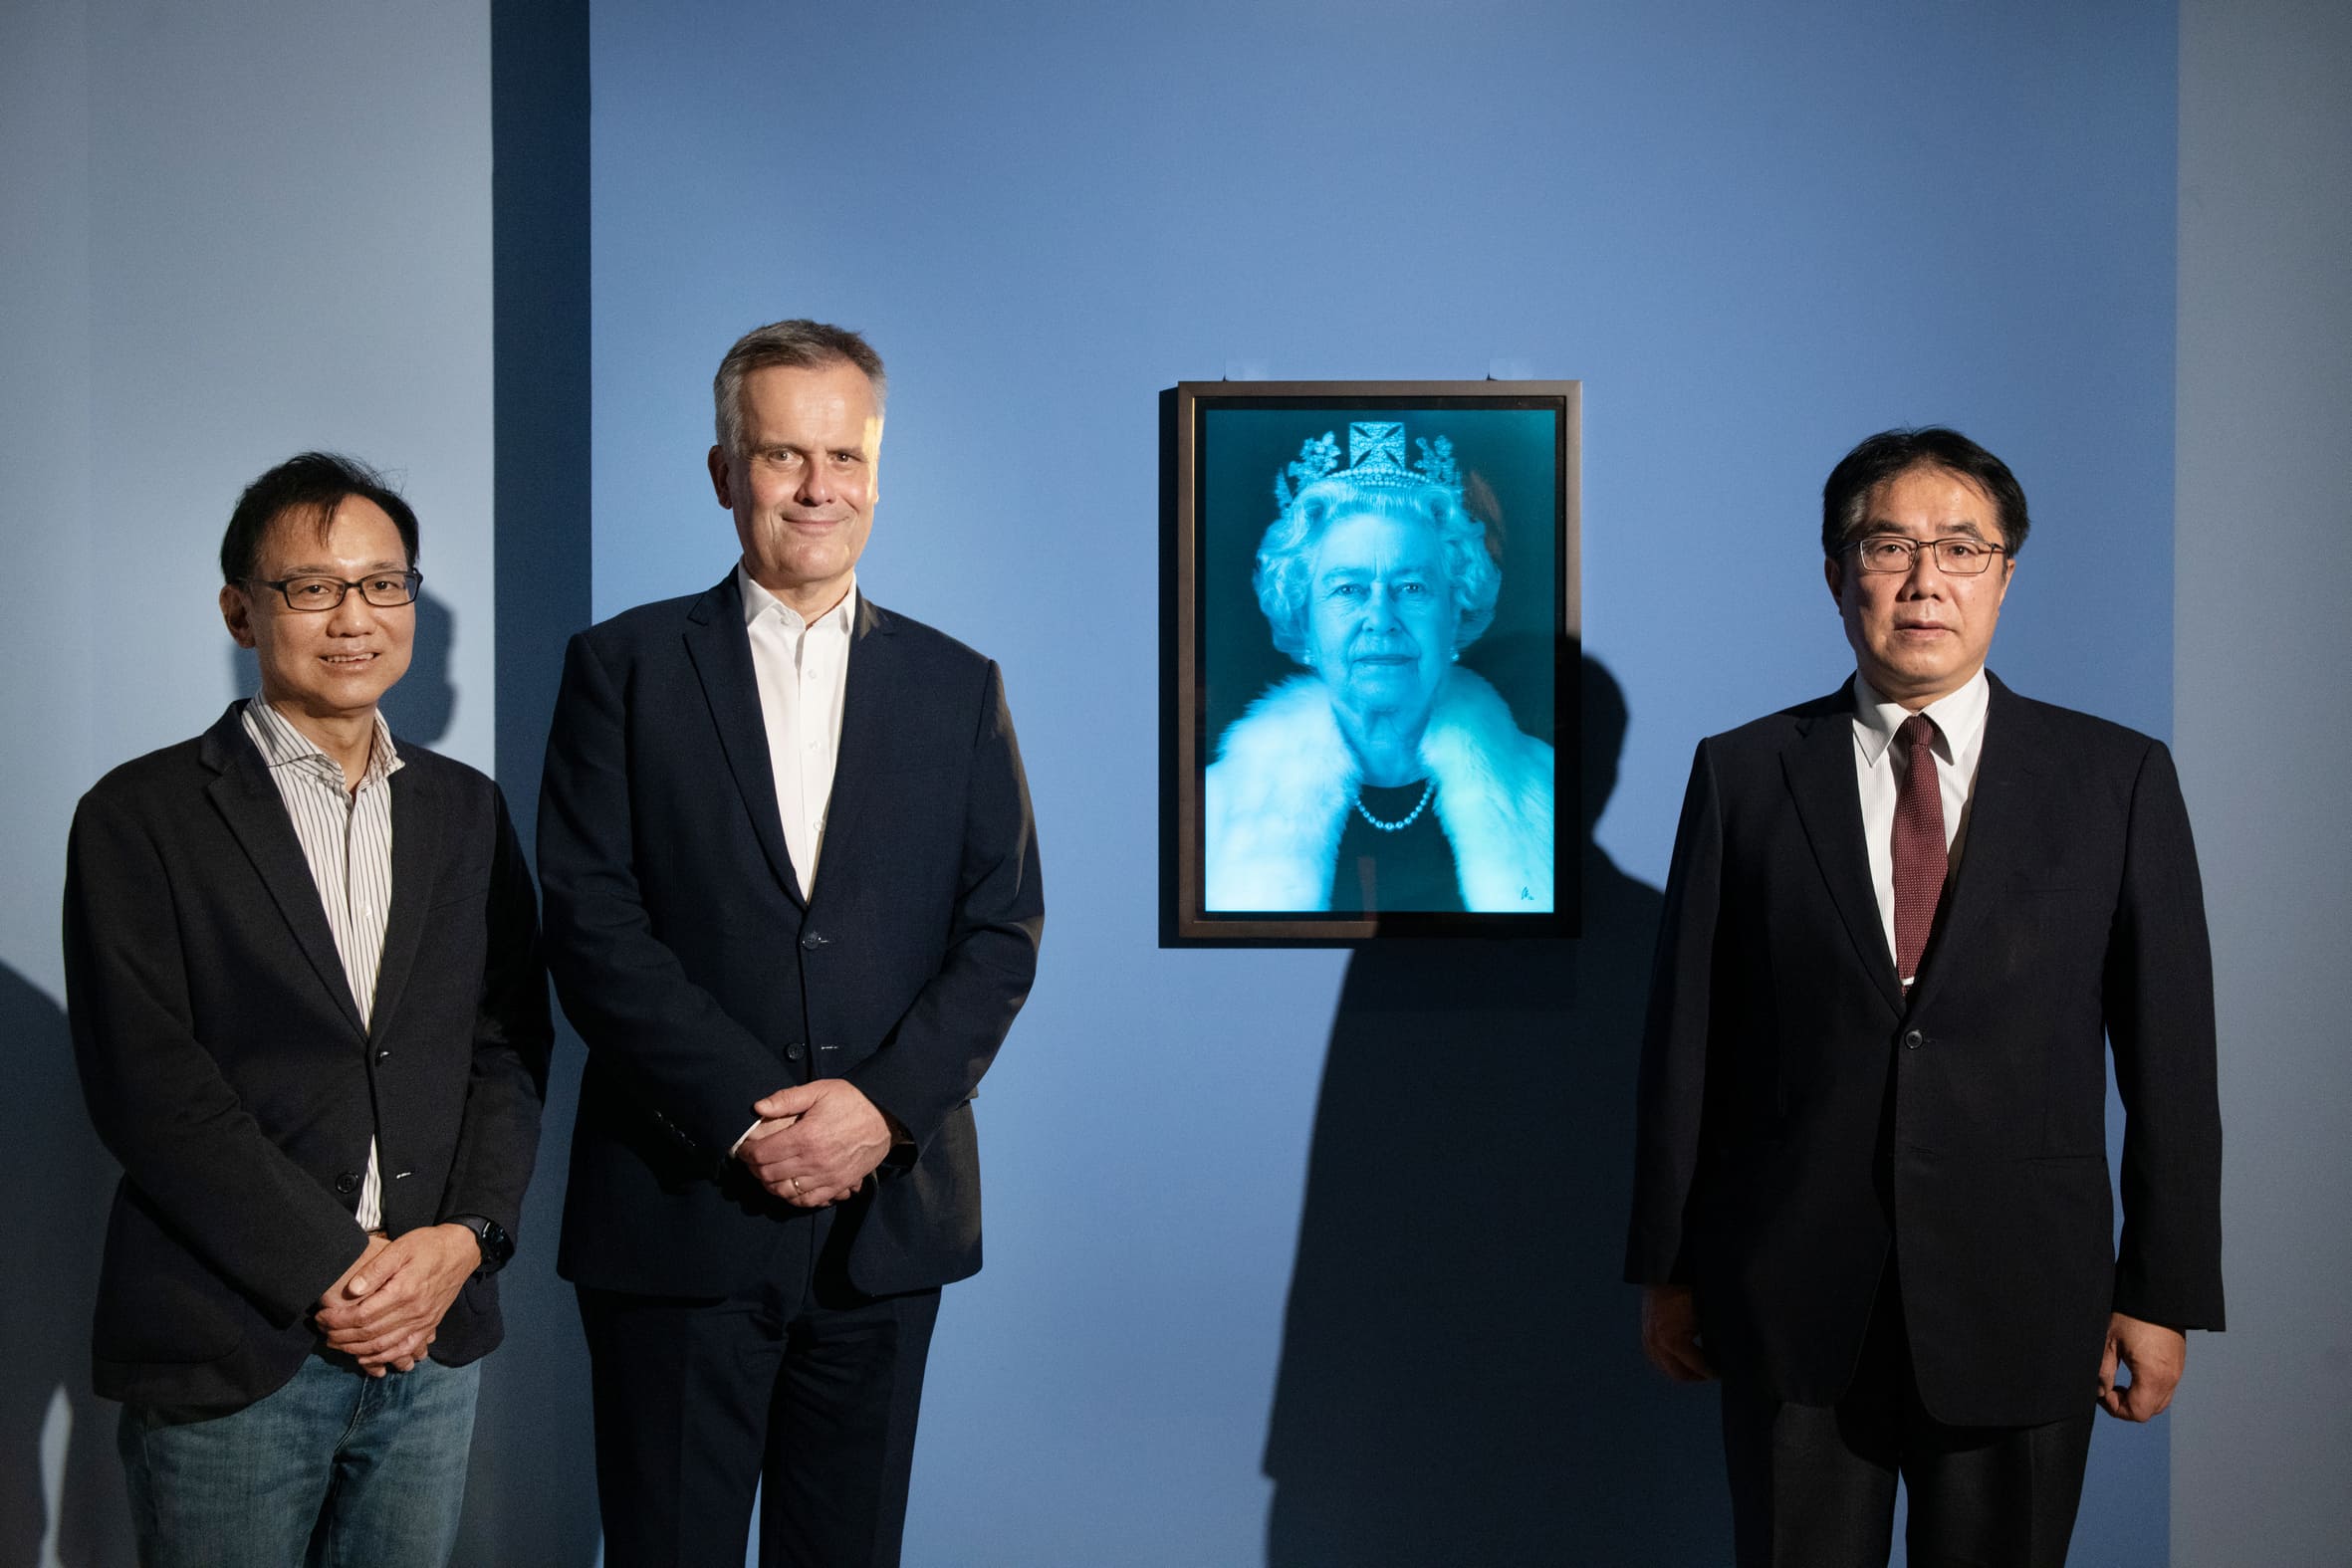 英國在台辦事處代表鄧元翰（中）與台南市長黃偉哲（右）、奇美博物館館長許家彰（左）一同欣賞《時代的臉孔》國際大展，並與女王伊莉莎白二世的肖像合影。